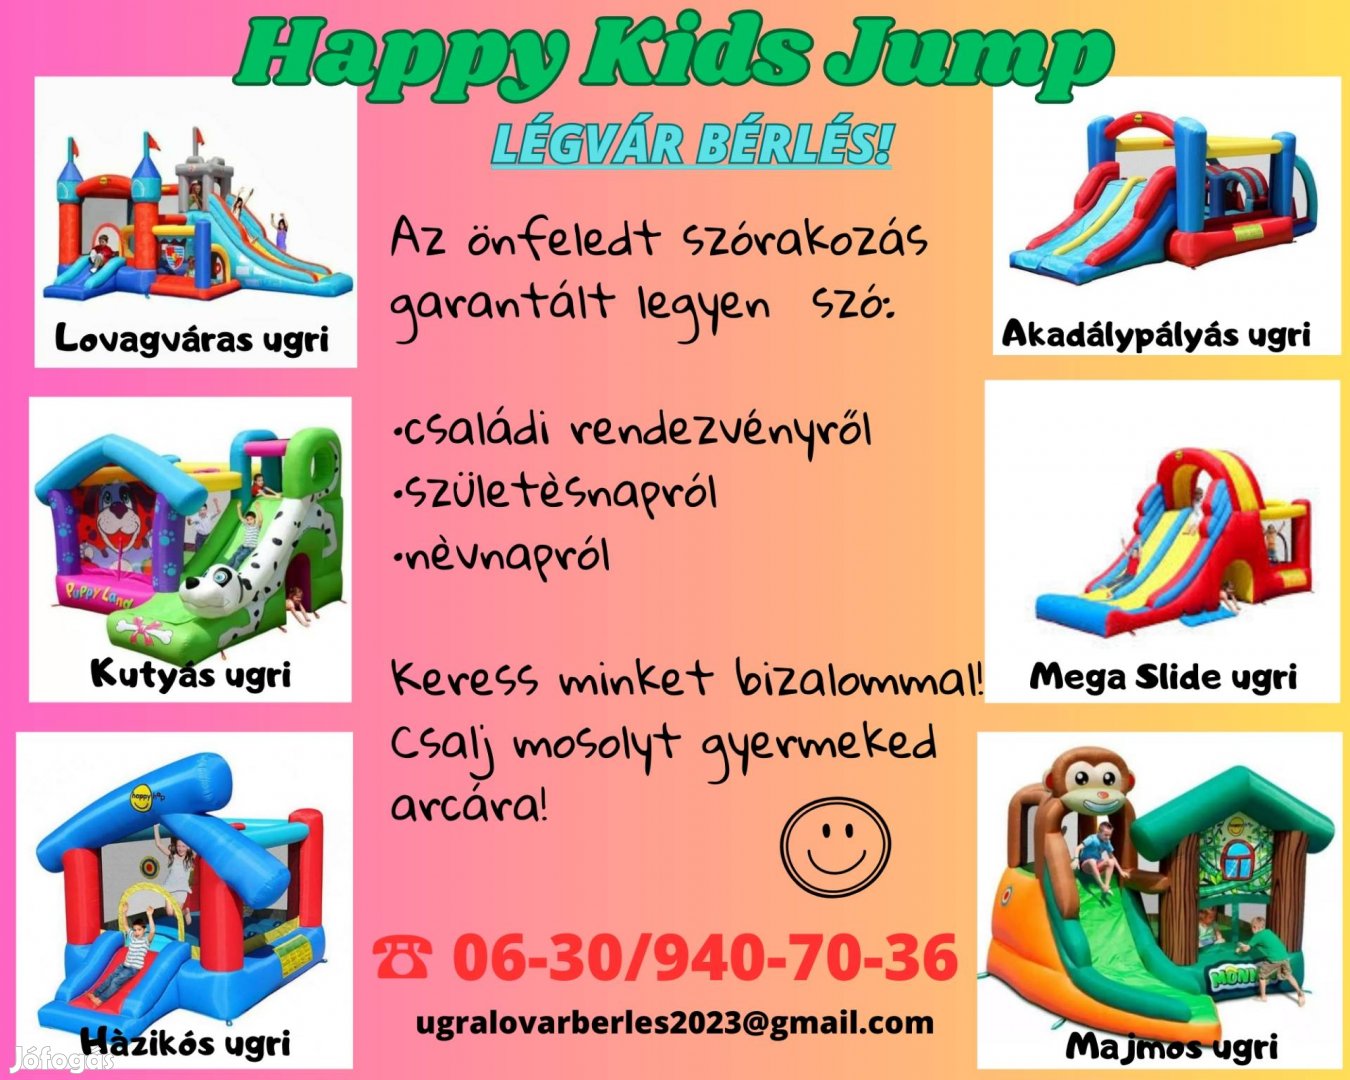 Légvárbérlés minden alkalomra a Happy Kids Jump-tól!